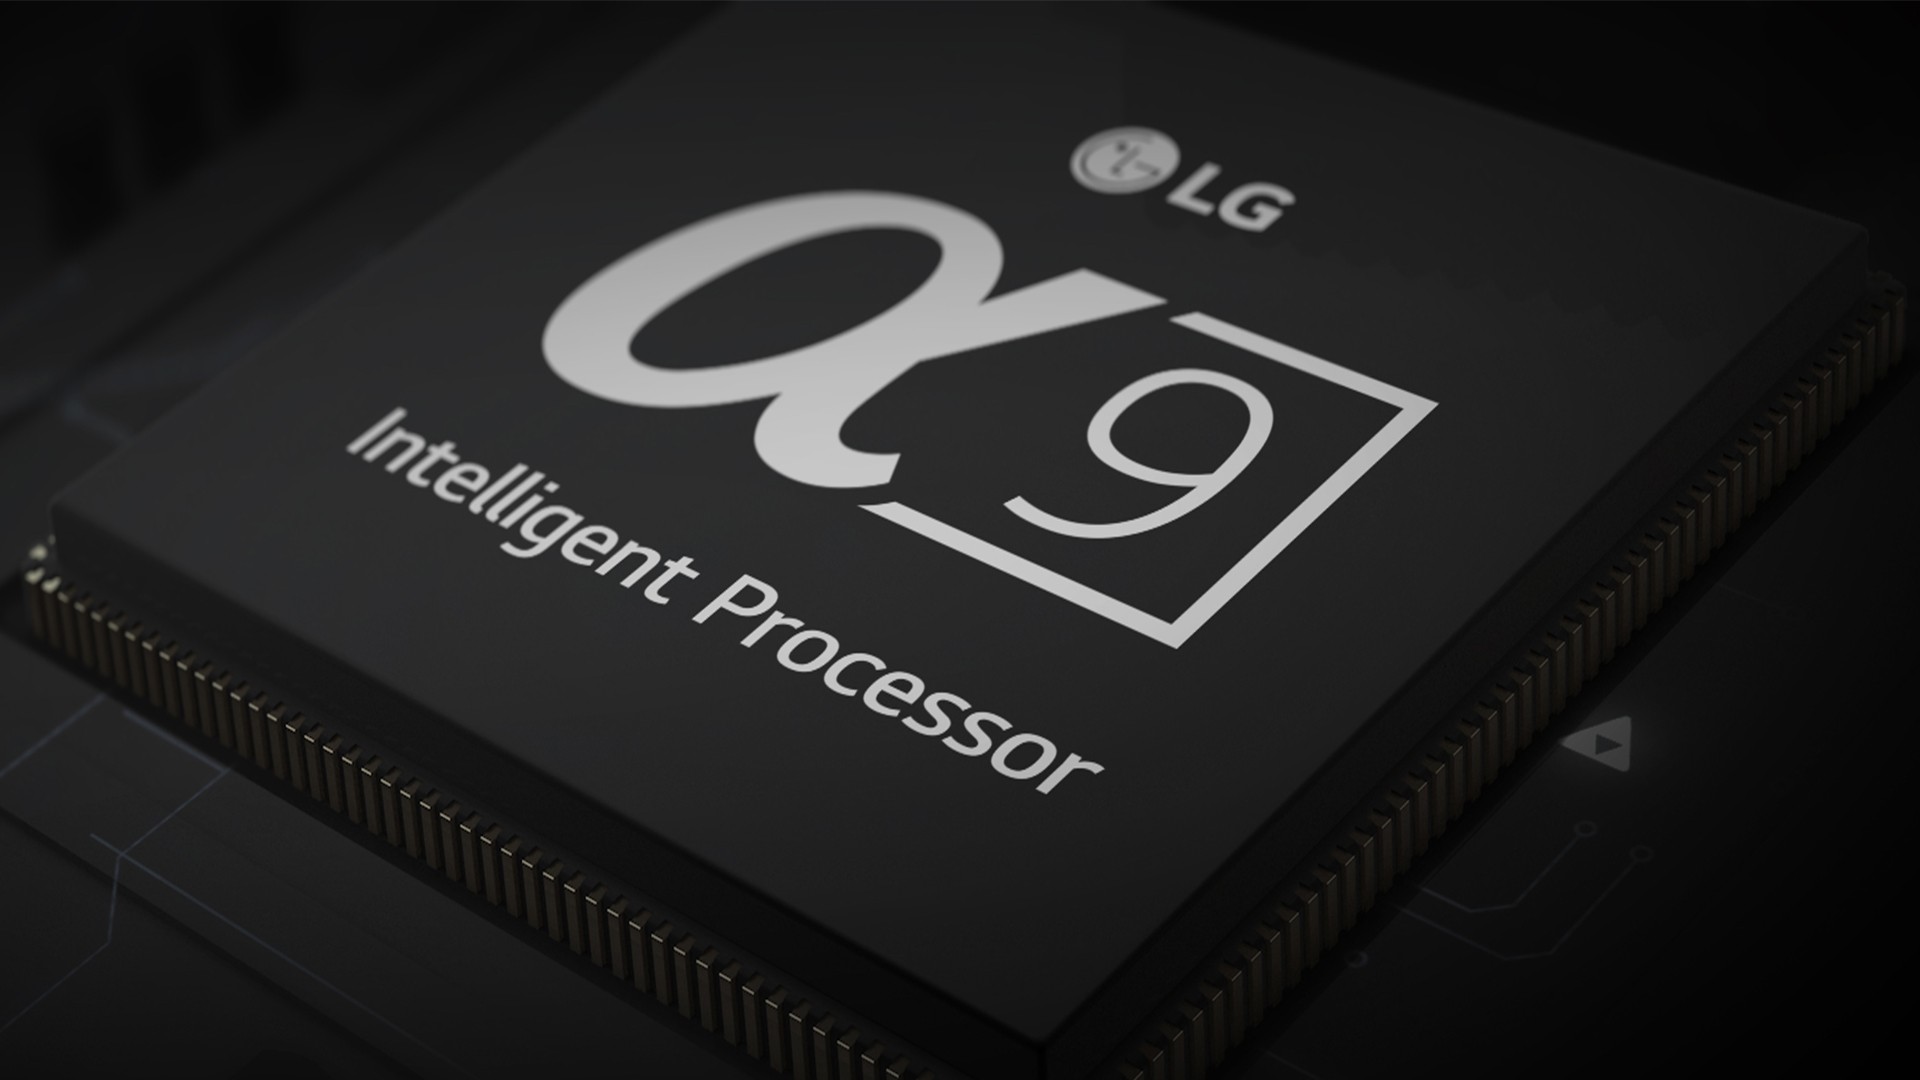 LG Alpha 9 Gen2 (a9 Gen 2) processor